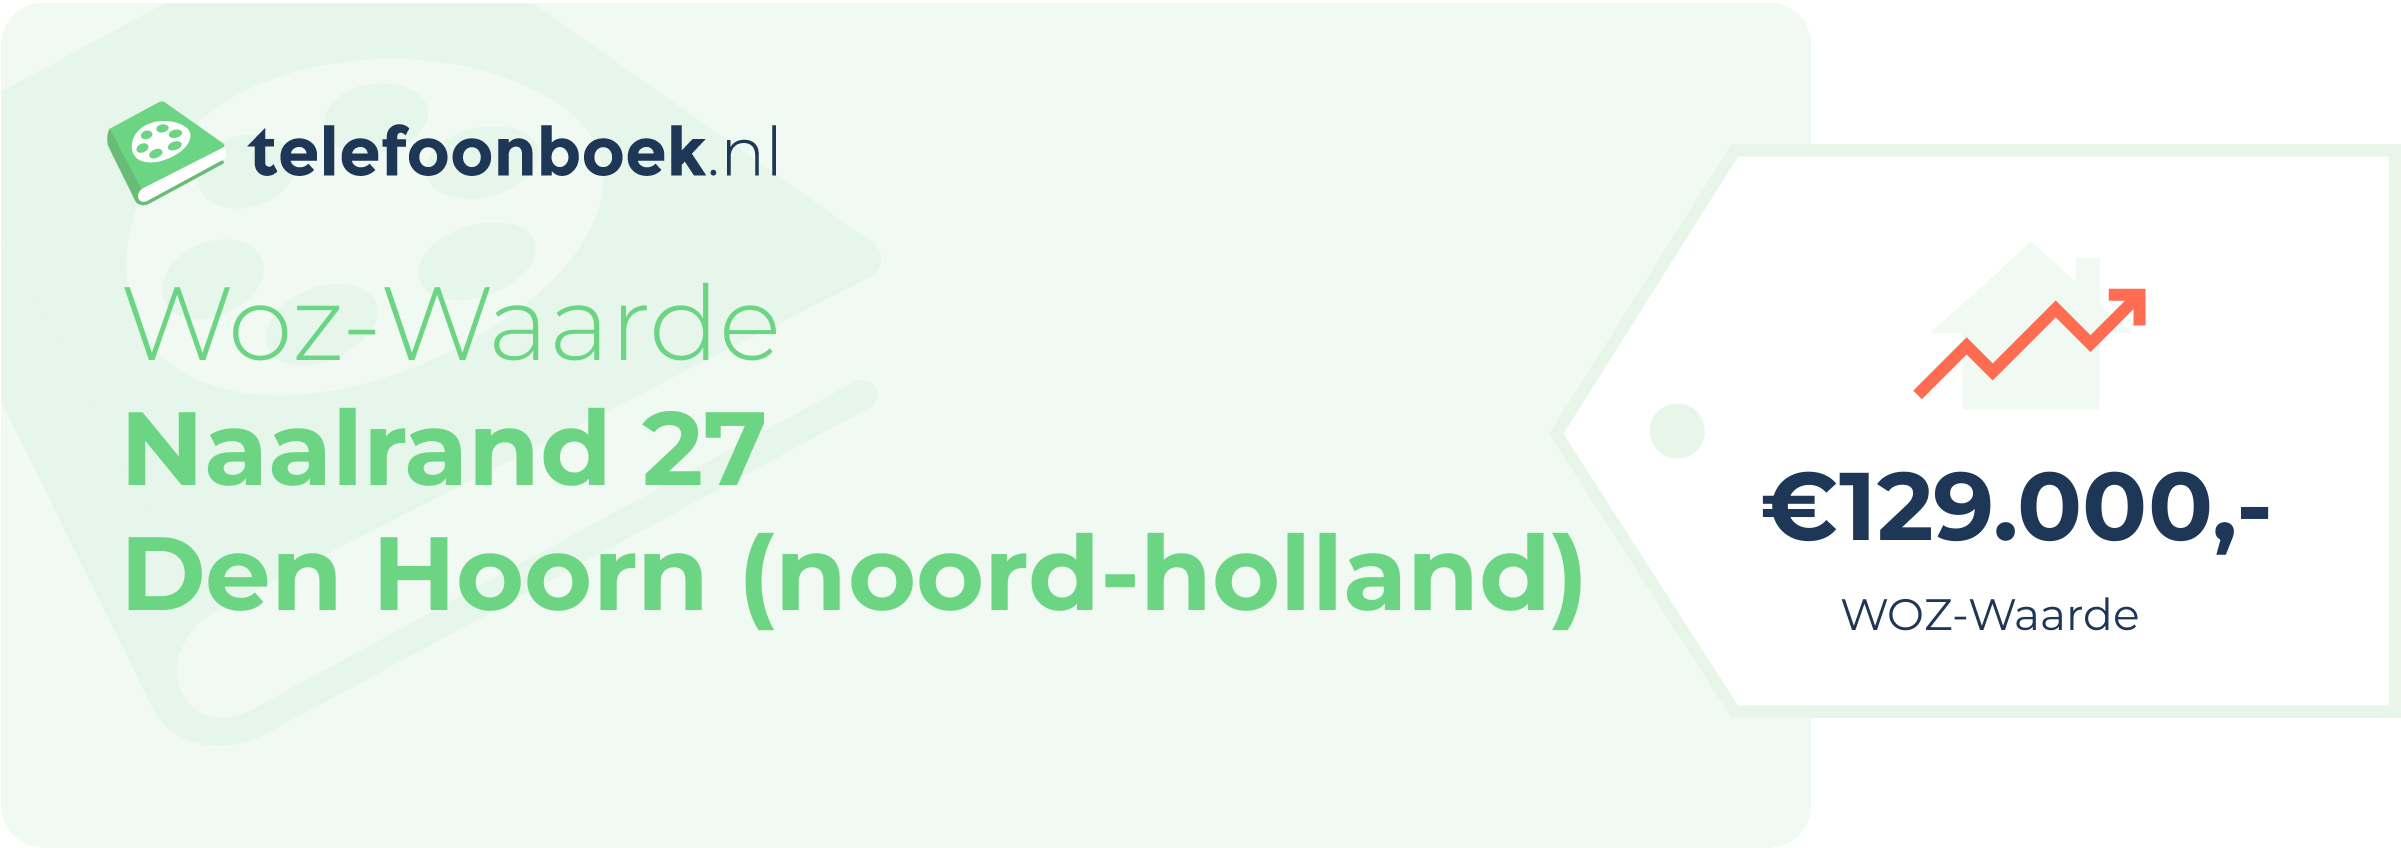 WOZ-waarde Naalrand 27 Den Hoorn (Noord-Holland)